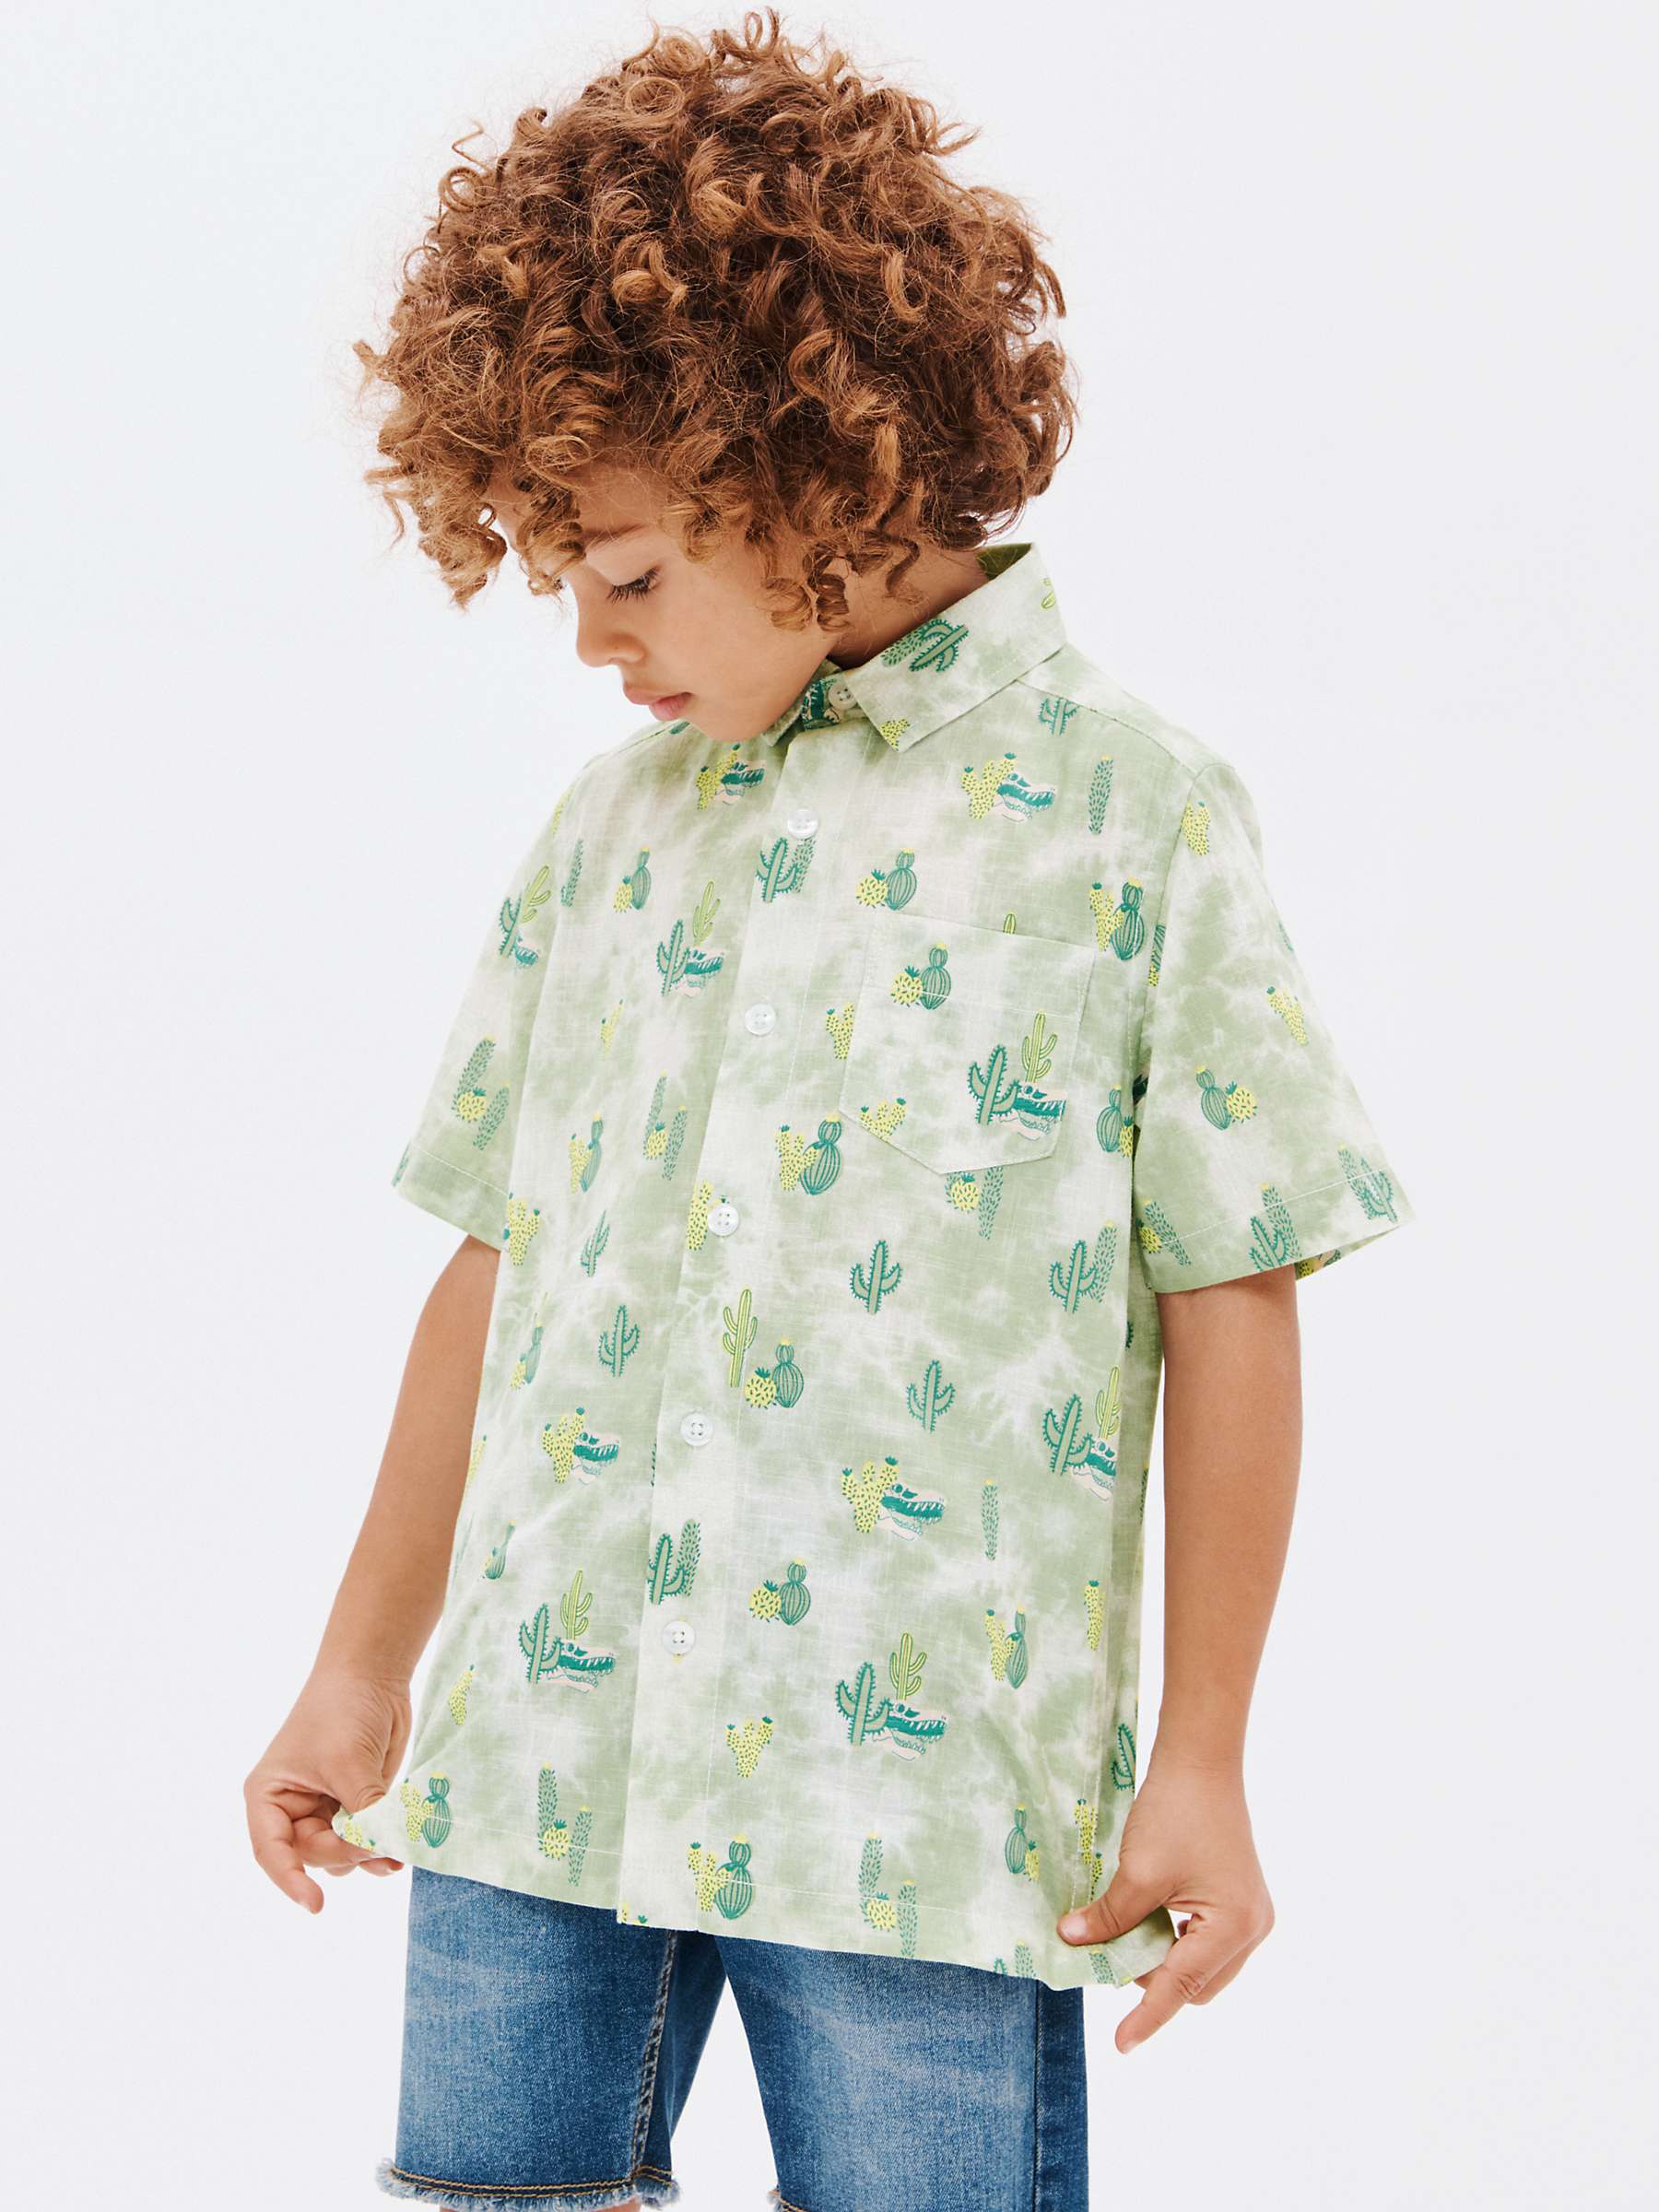 Buy John Lewis Kids' Cactus Short Sleeve Shirt, Green Online at johnlewis.com